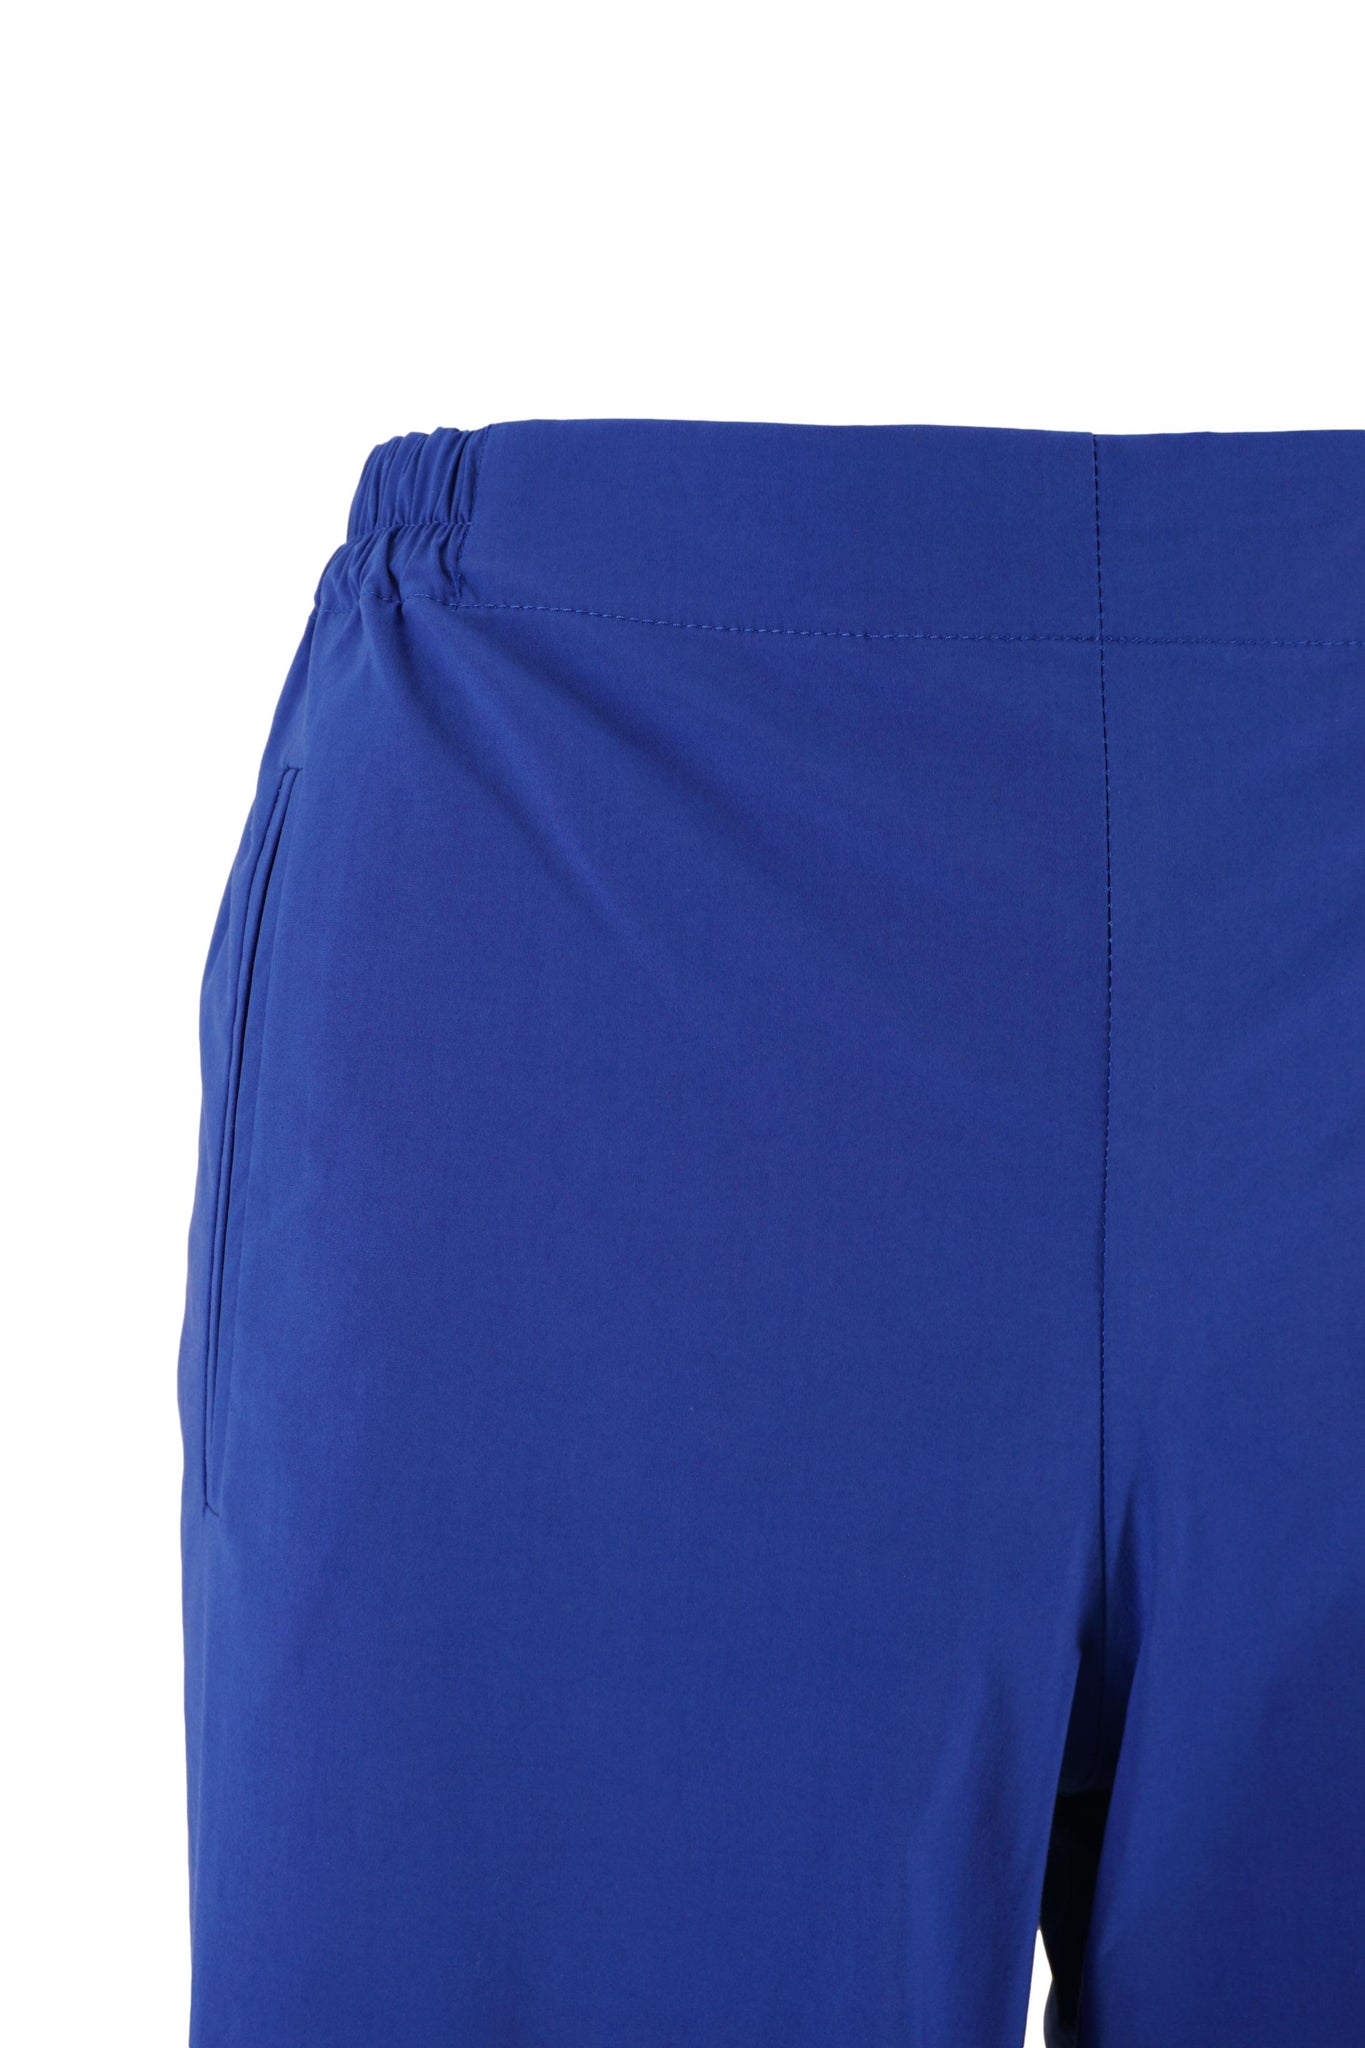 Pantalone in Cotone con Mezzo Elastico in Vita / Bluette - Ideal Moda